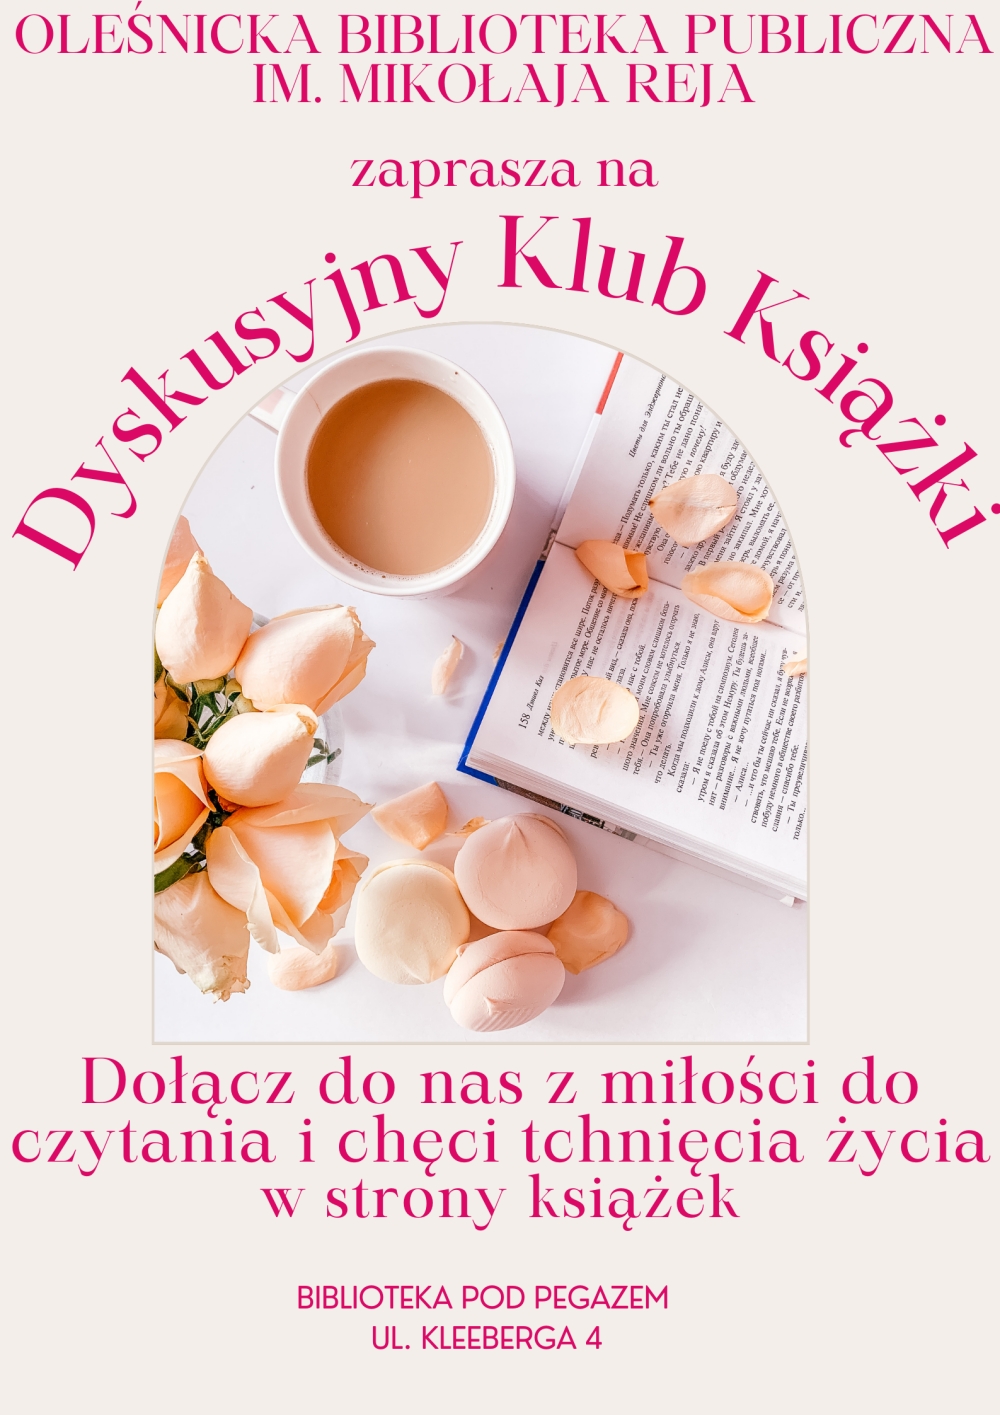 Plakat promujący udział w spotkaniach DKK dla młodzieży